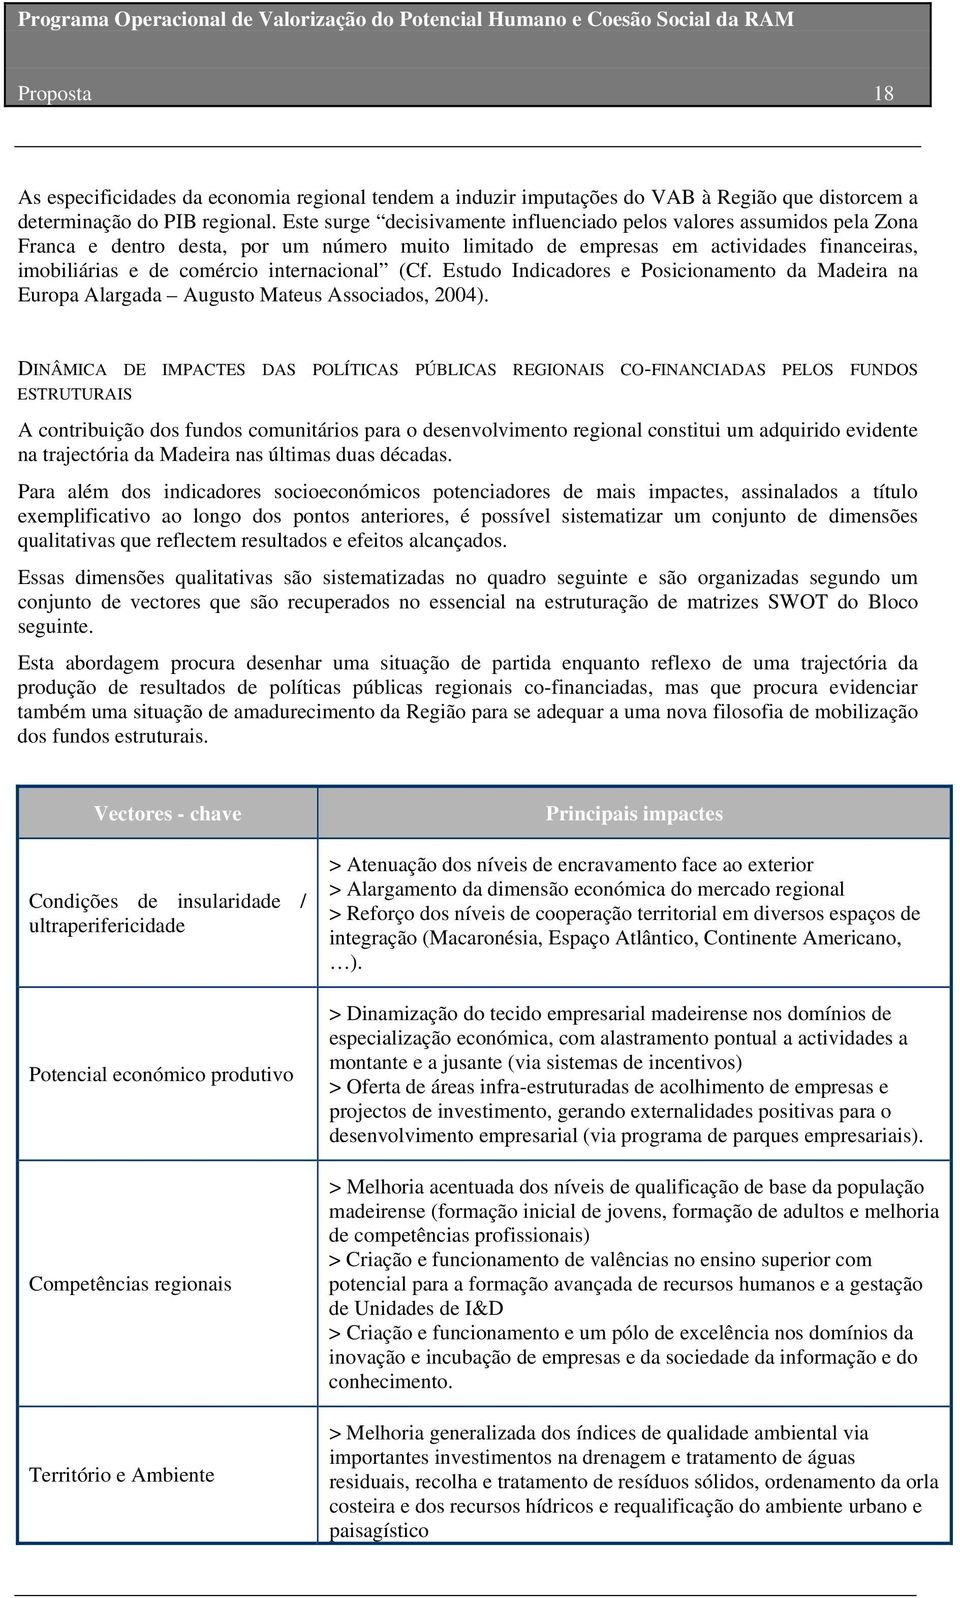 internacional (Cf. Estudo Indicadores e Posicionamento da Madeira na Europa Alargada Augusto Mateus Associados, 2004).